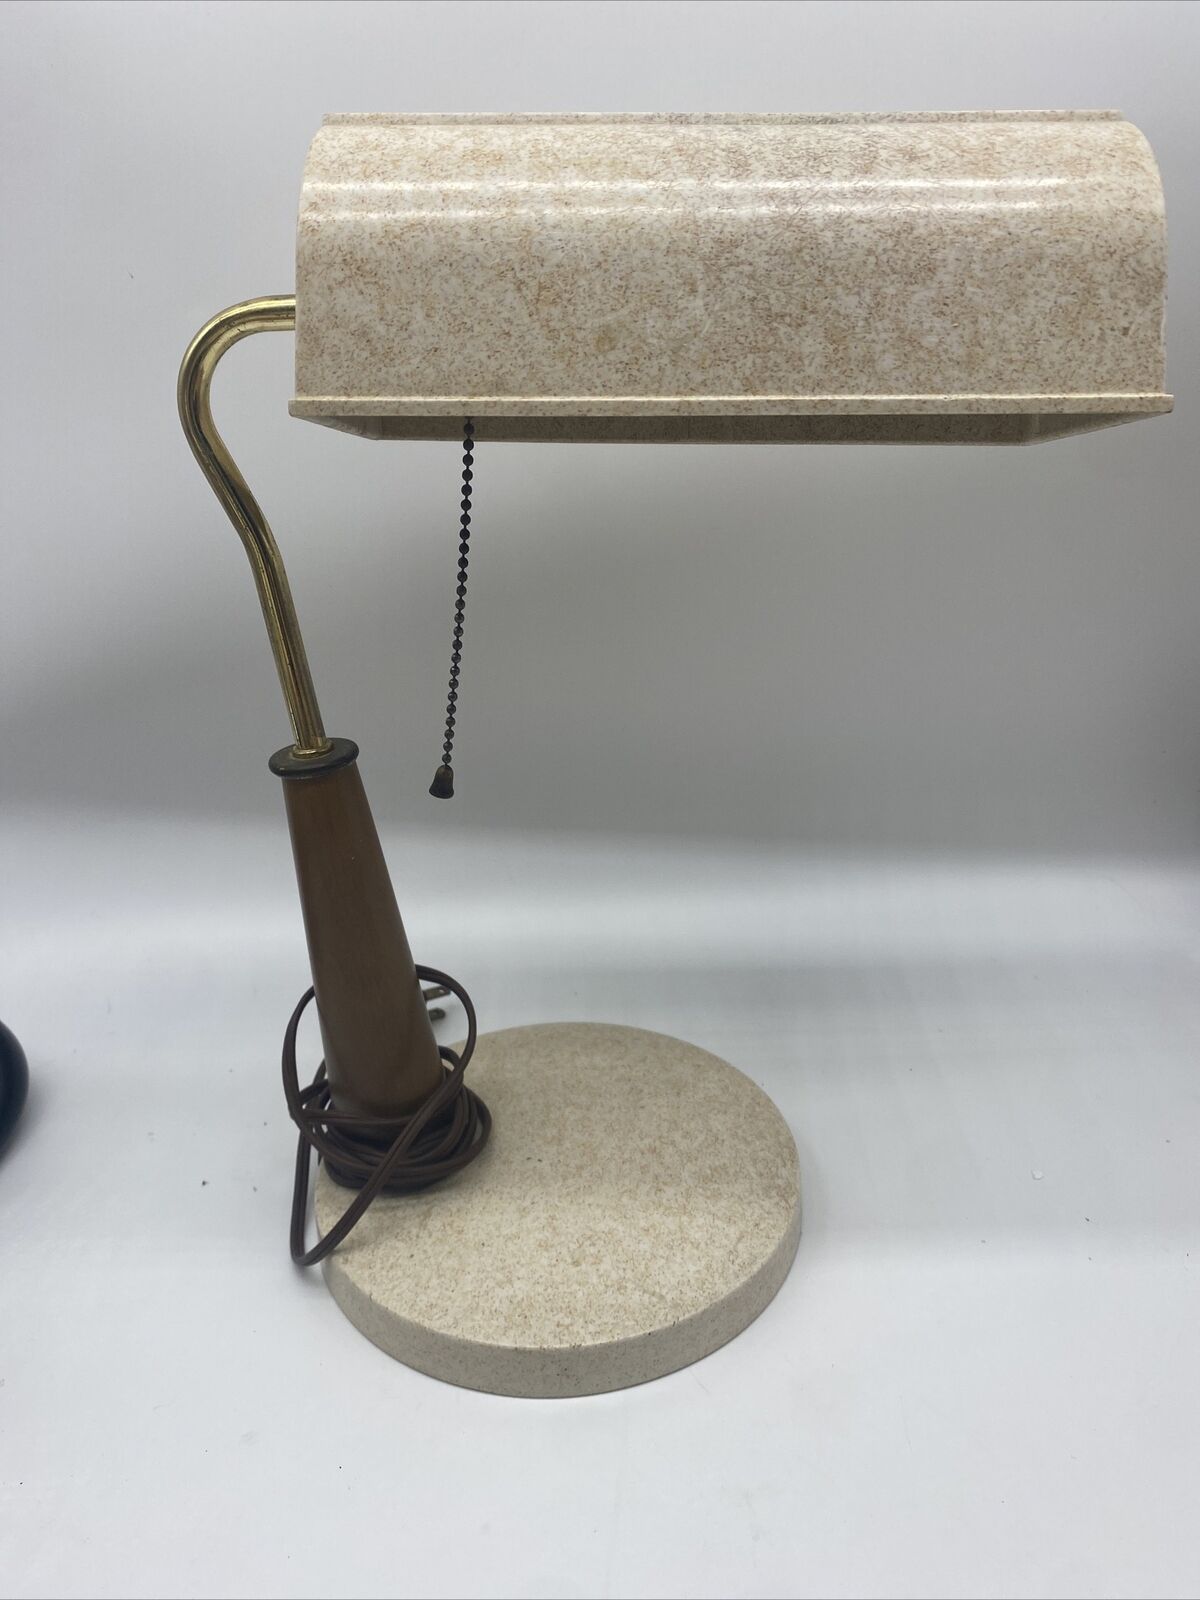 Vintage Banker's Desk Lamp Mid Century Modern Melamine Wood Pull Chain Lamp